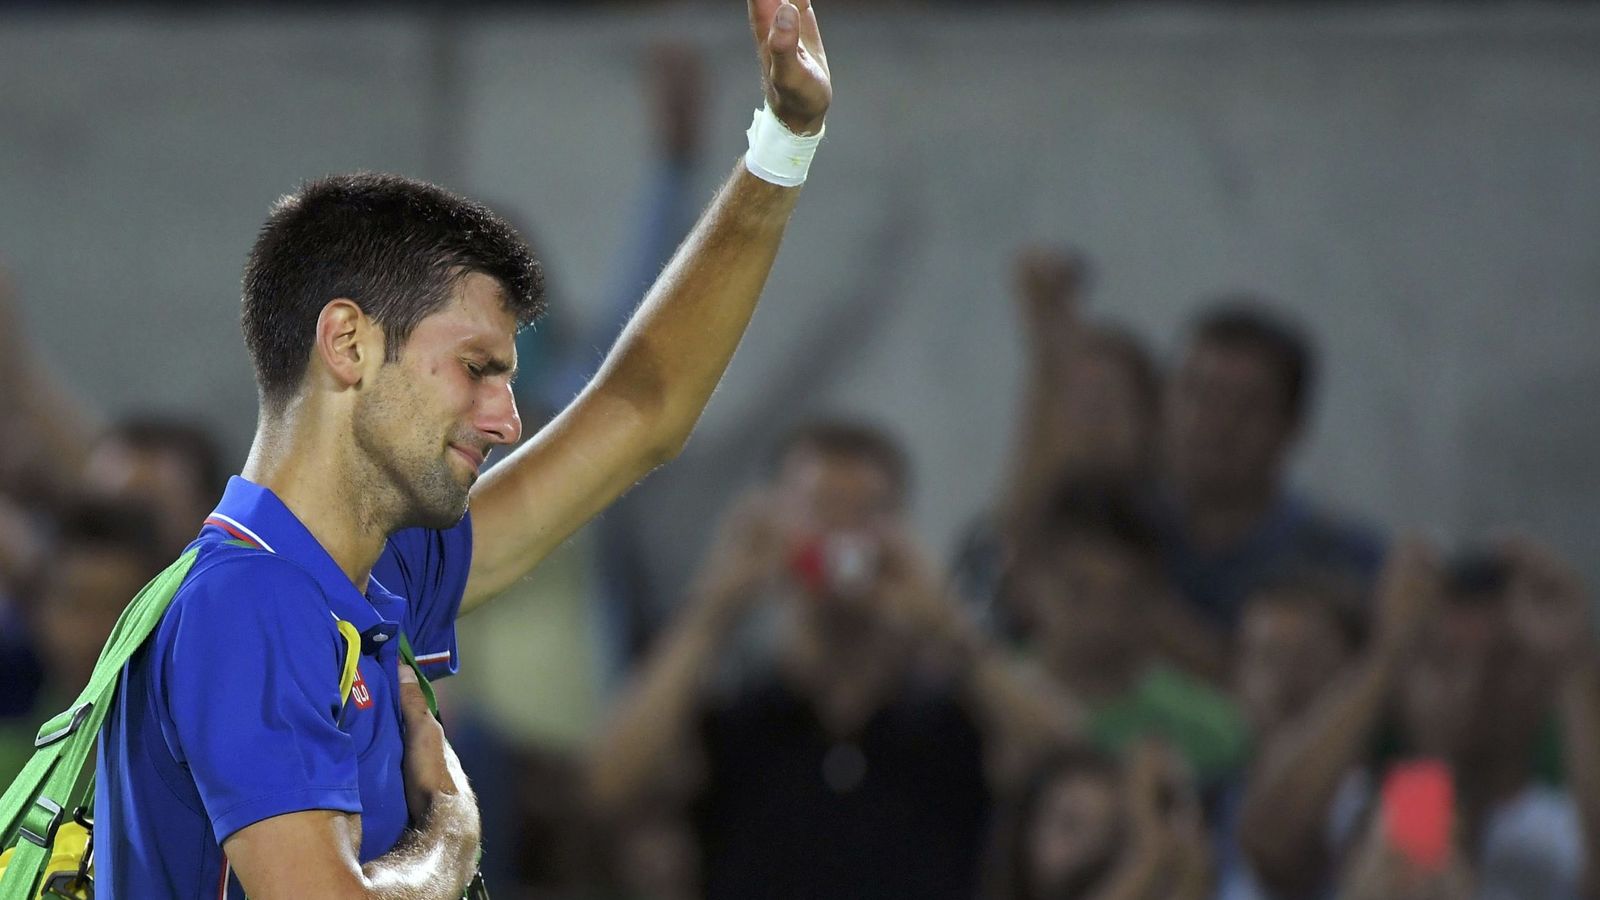 Foto: Novak Djokovic rompió a llorar tras caer ante Del Potro. (Reuters)